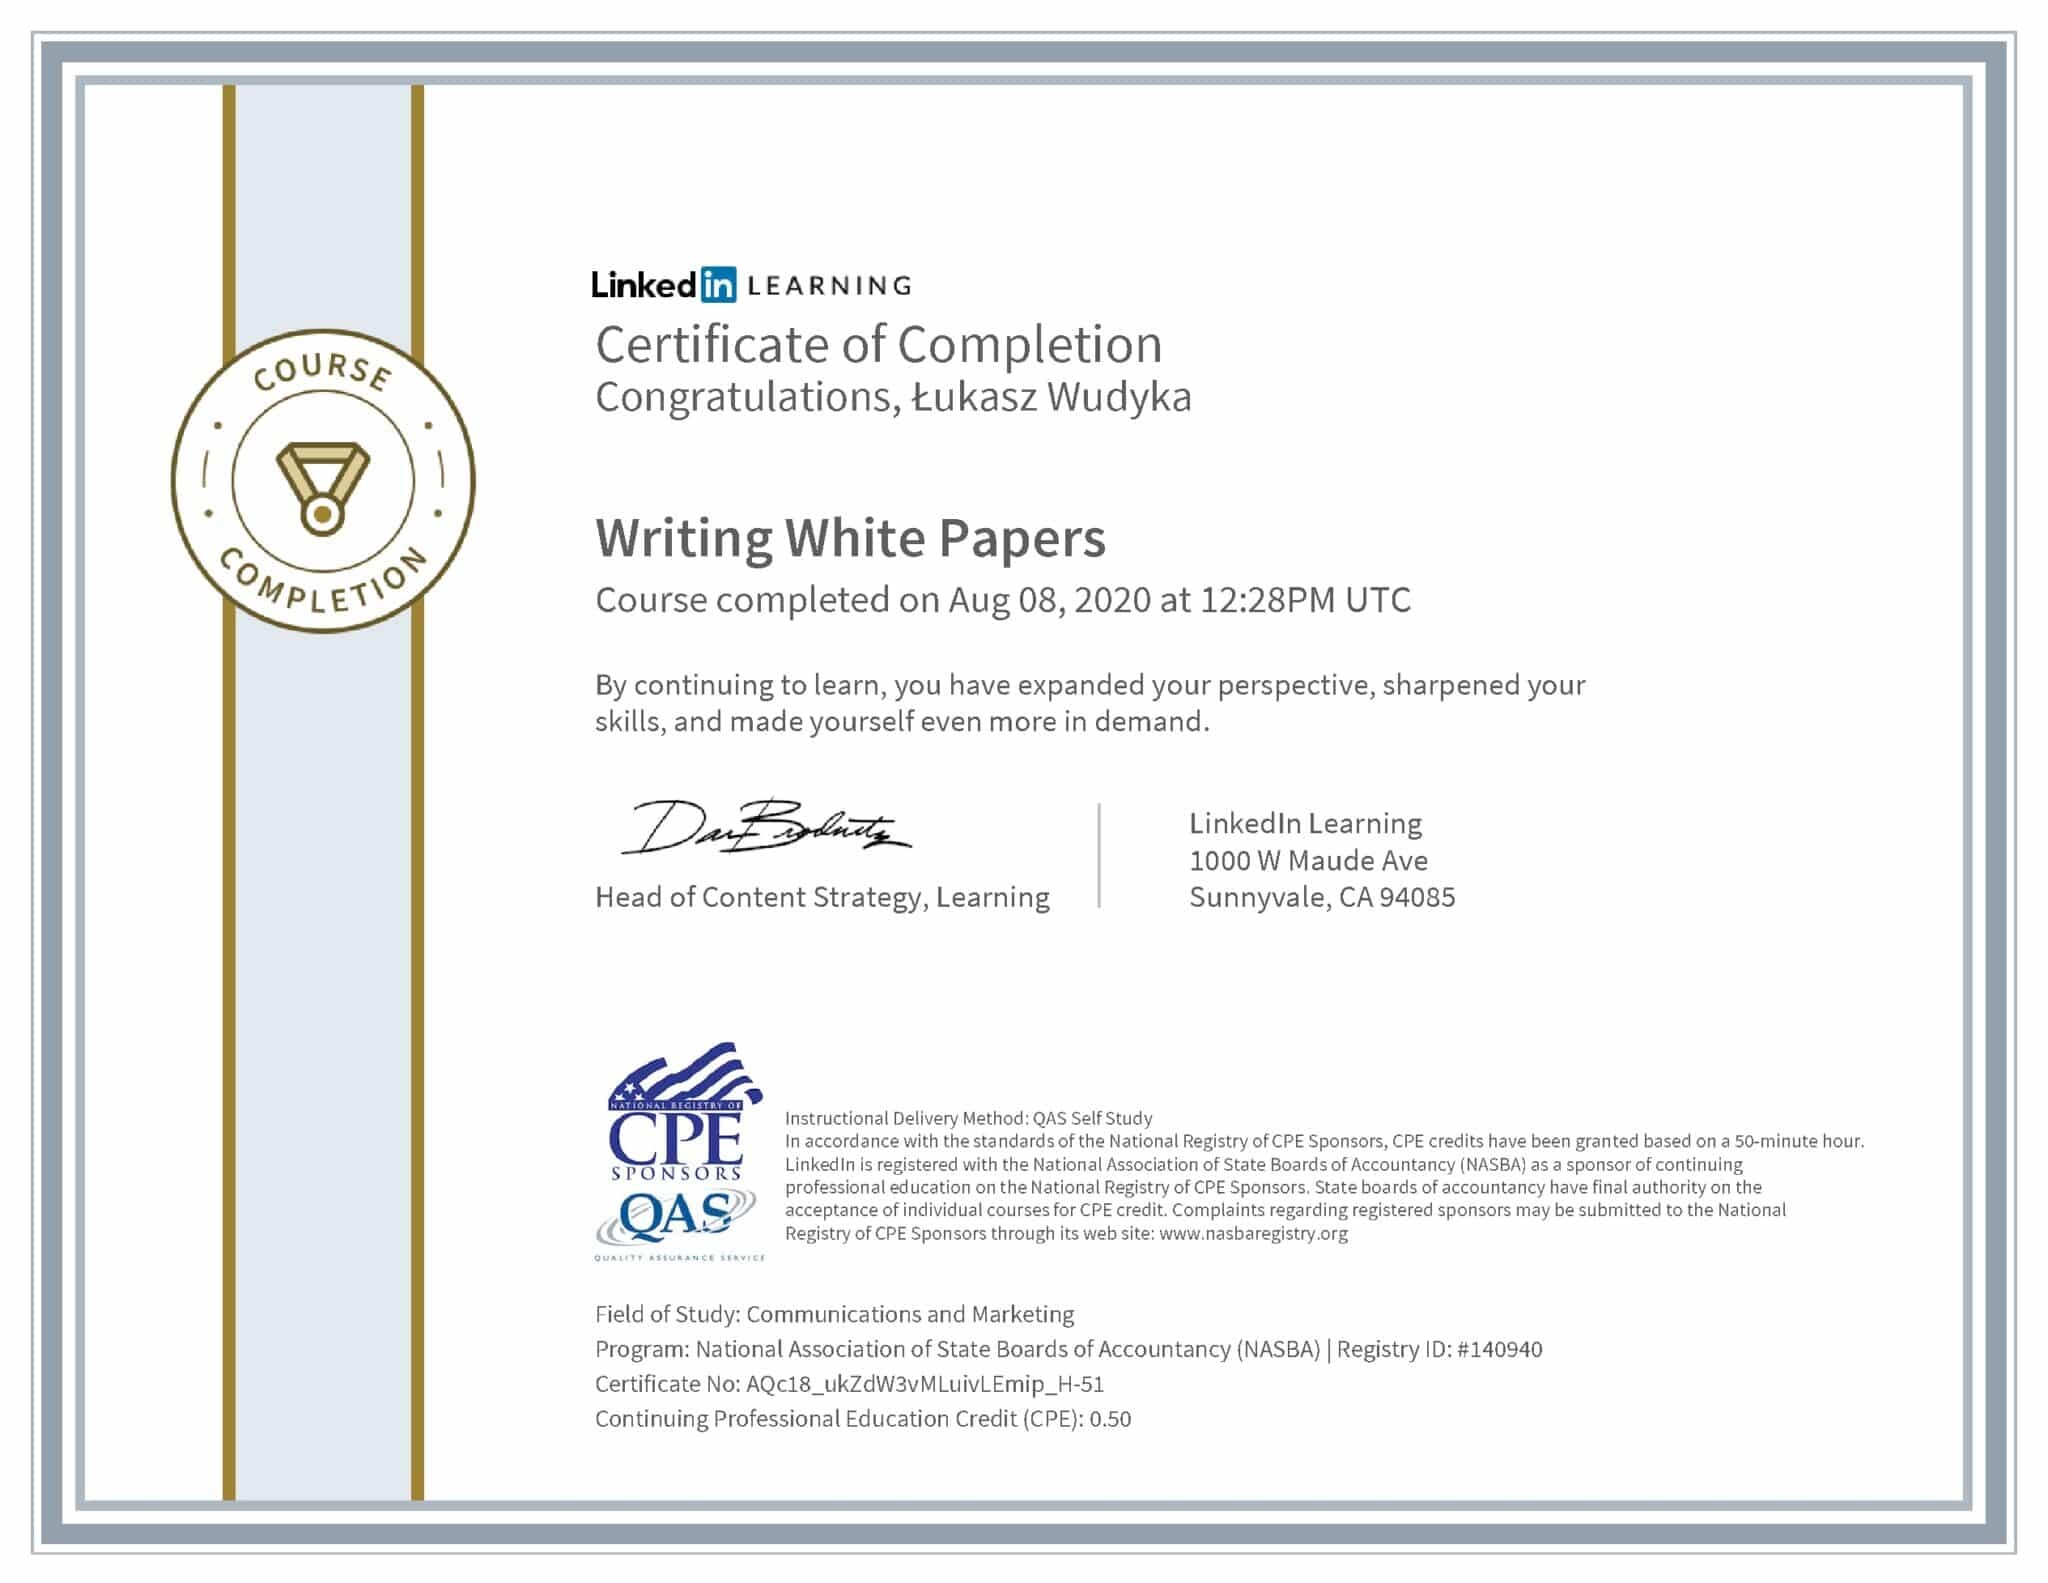 Łukasz Wudyka certyfikat LinkedIn Writing White Papers NASBA